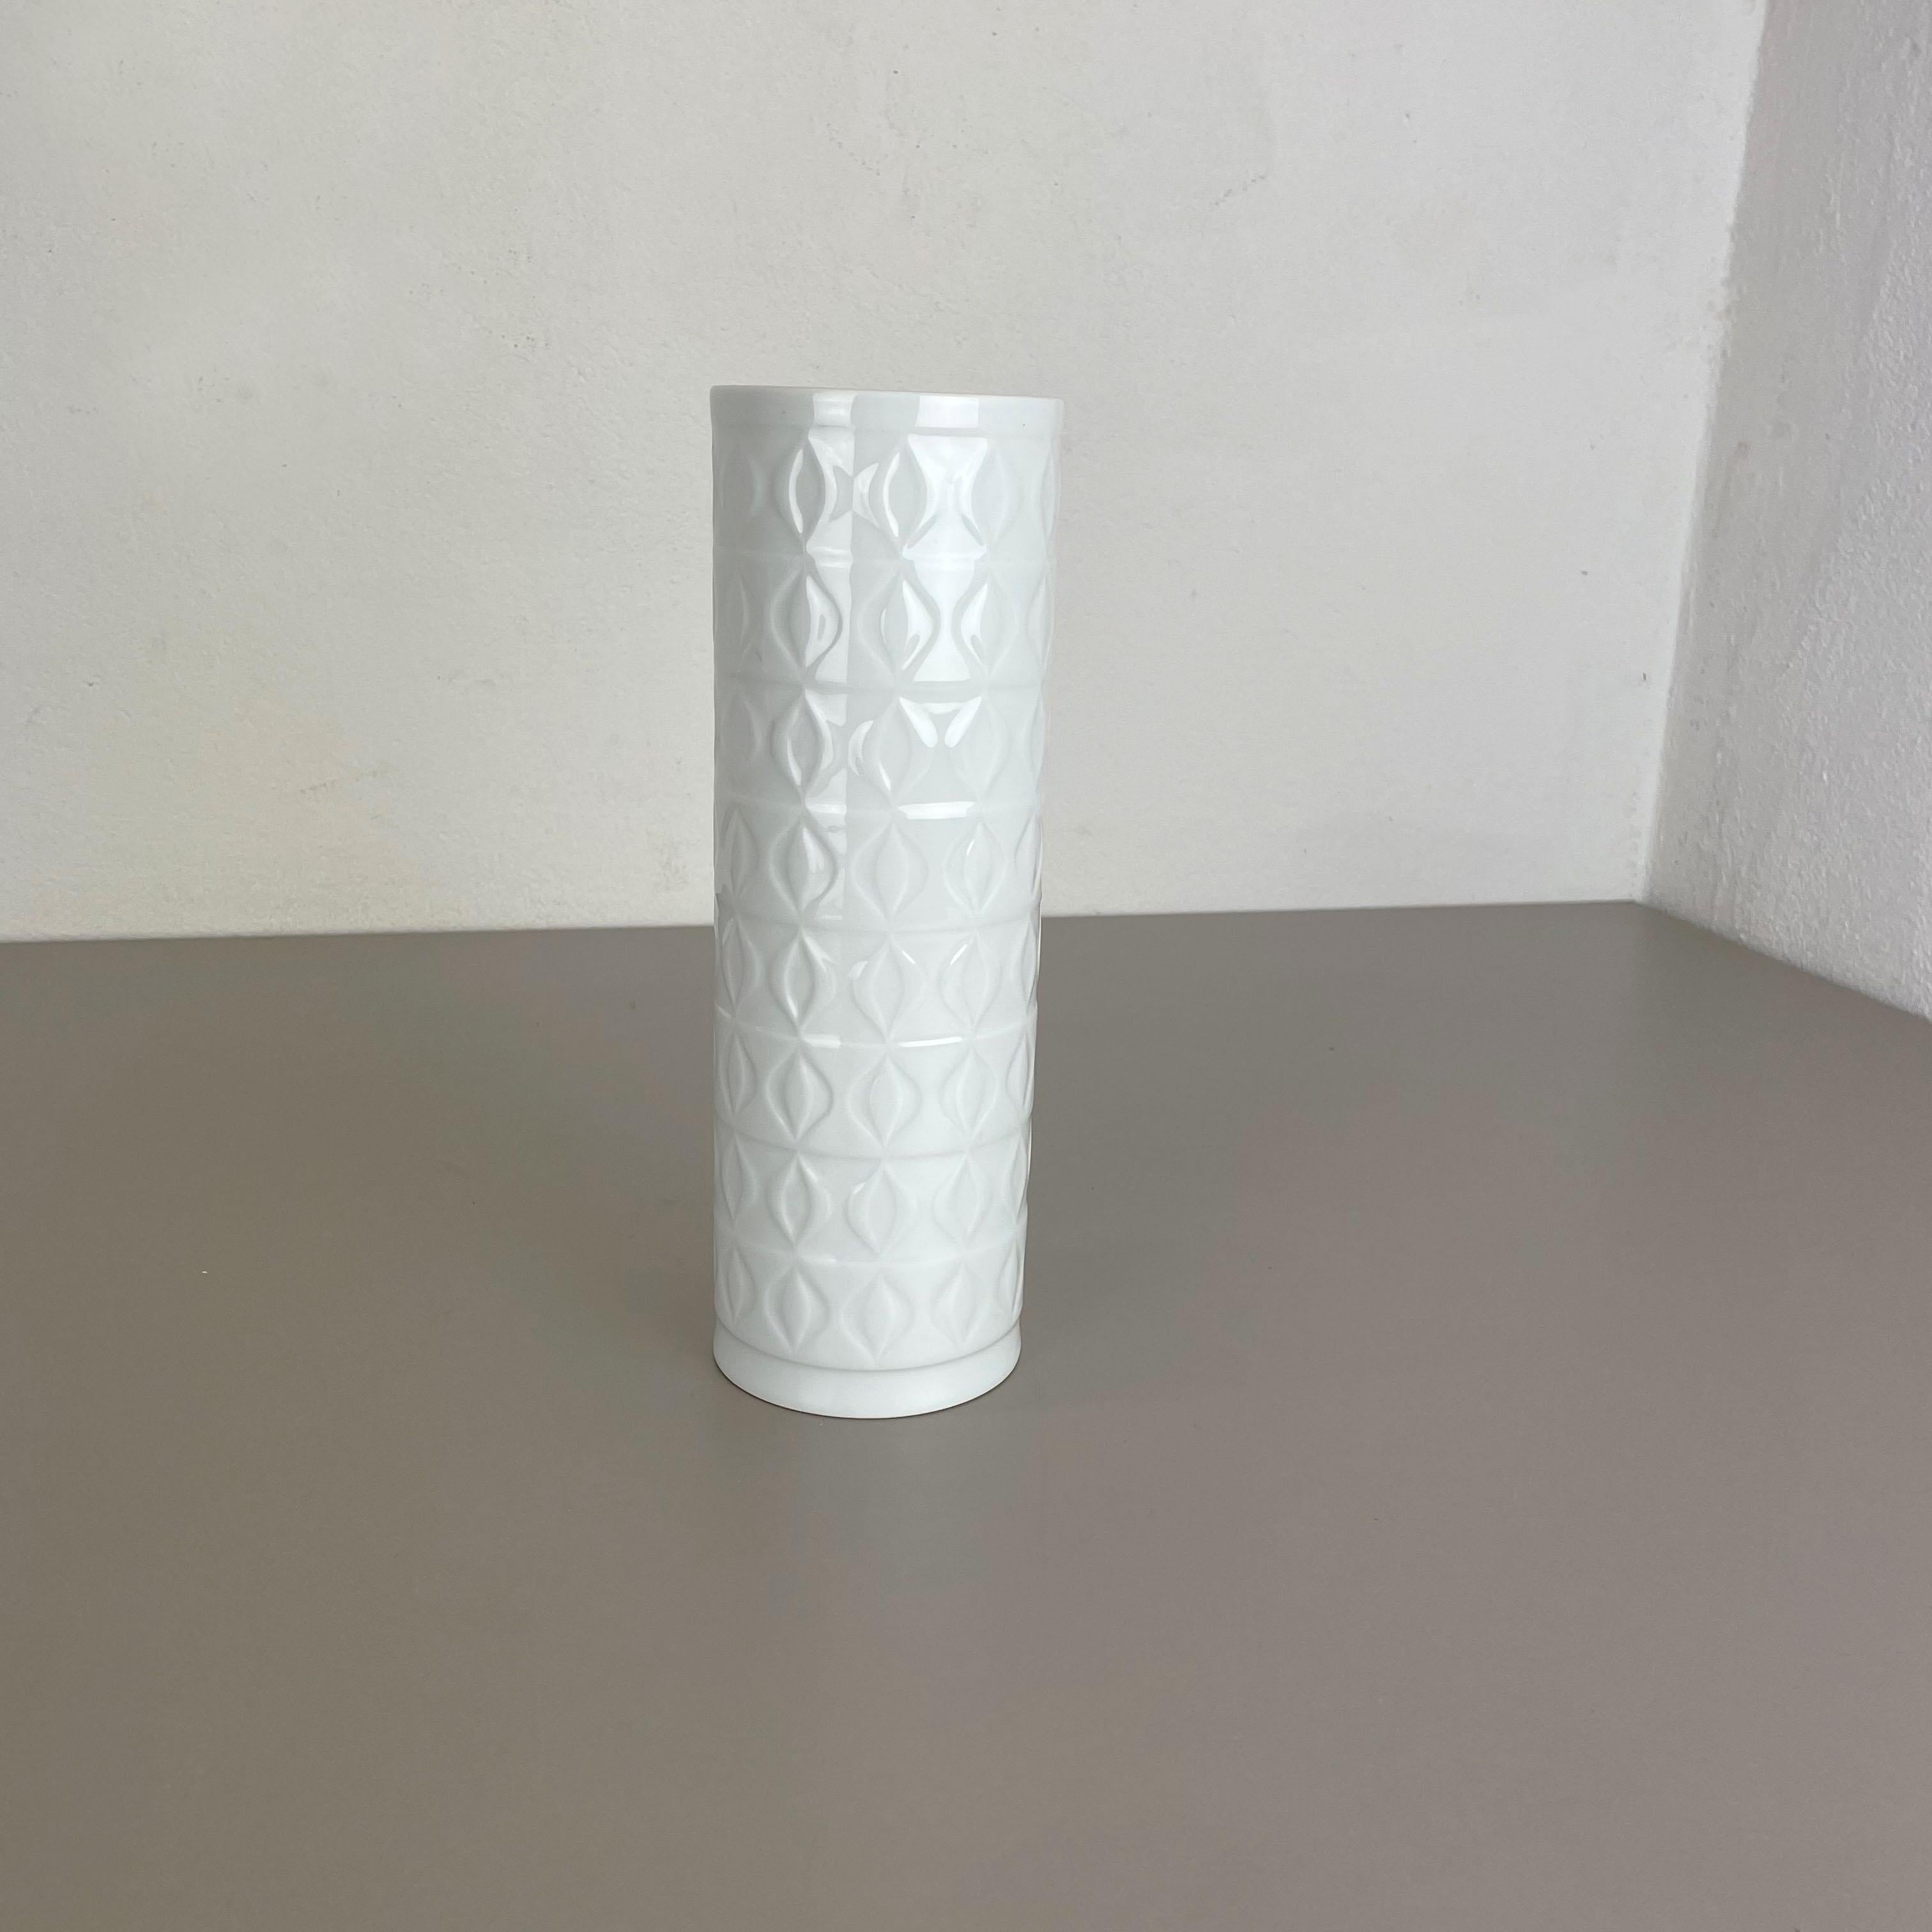 Article :

Vase en porcelaine Op Art


Producteur :

AK Kaiser, Allemagne


Description :

Ce vase OP Art vintage original a été produit dans les années 1970 en Allemagne. Il est fabriqué en porcelaine avec une surface optique